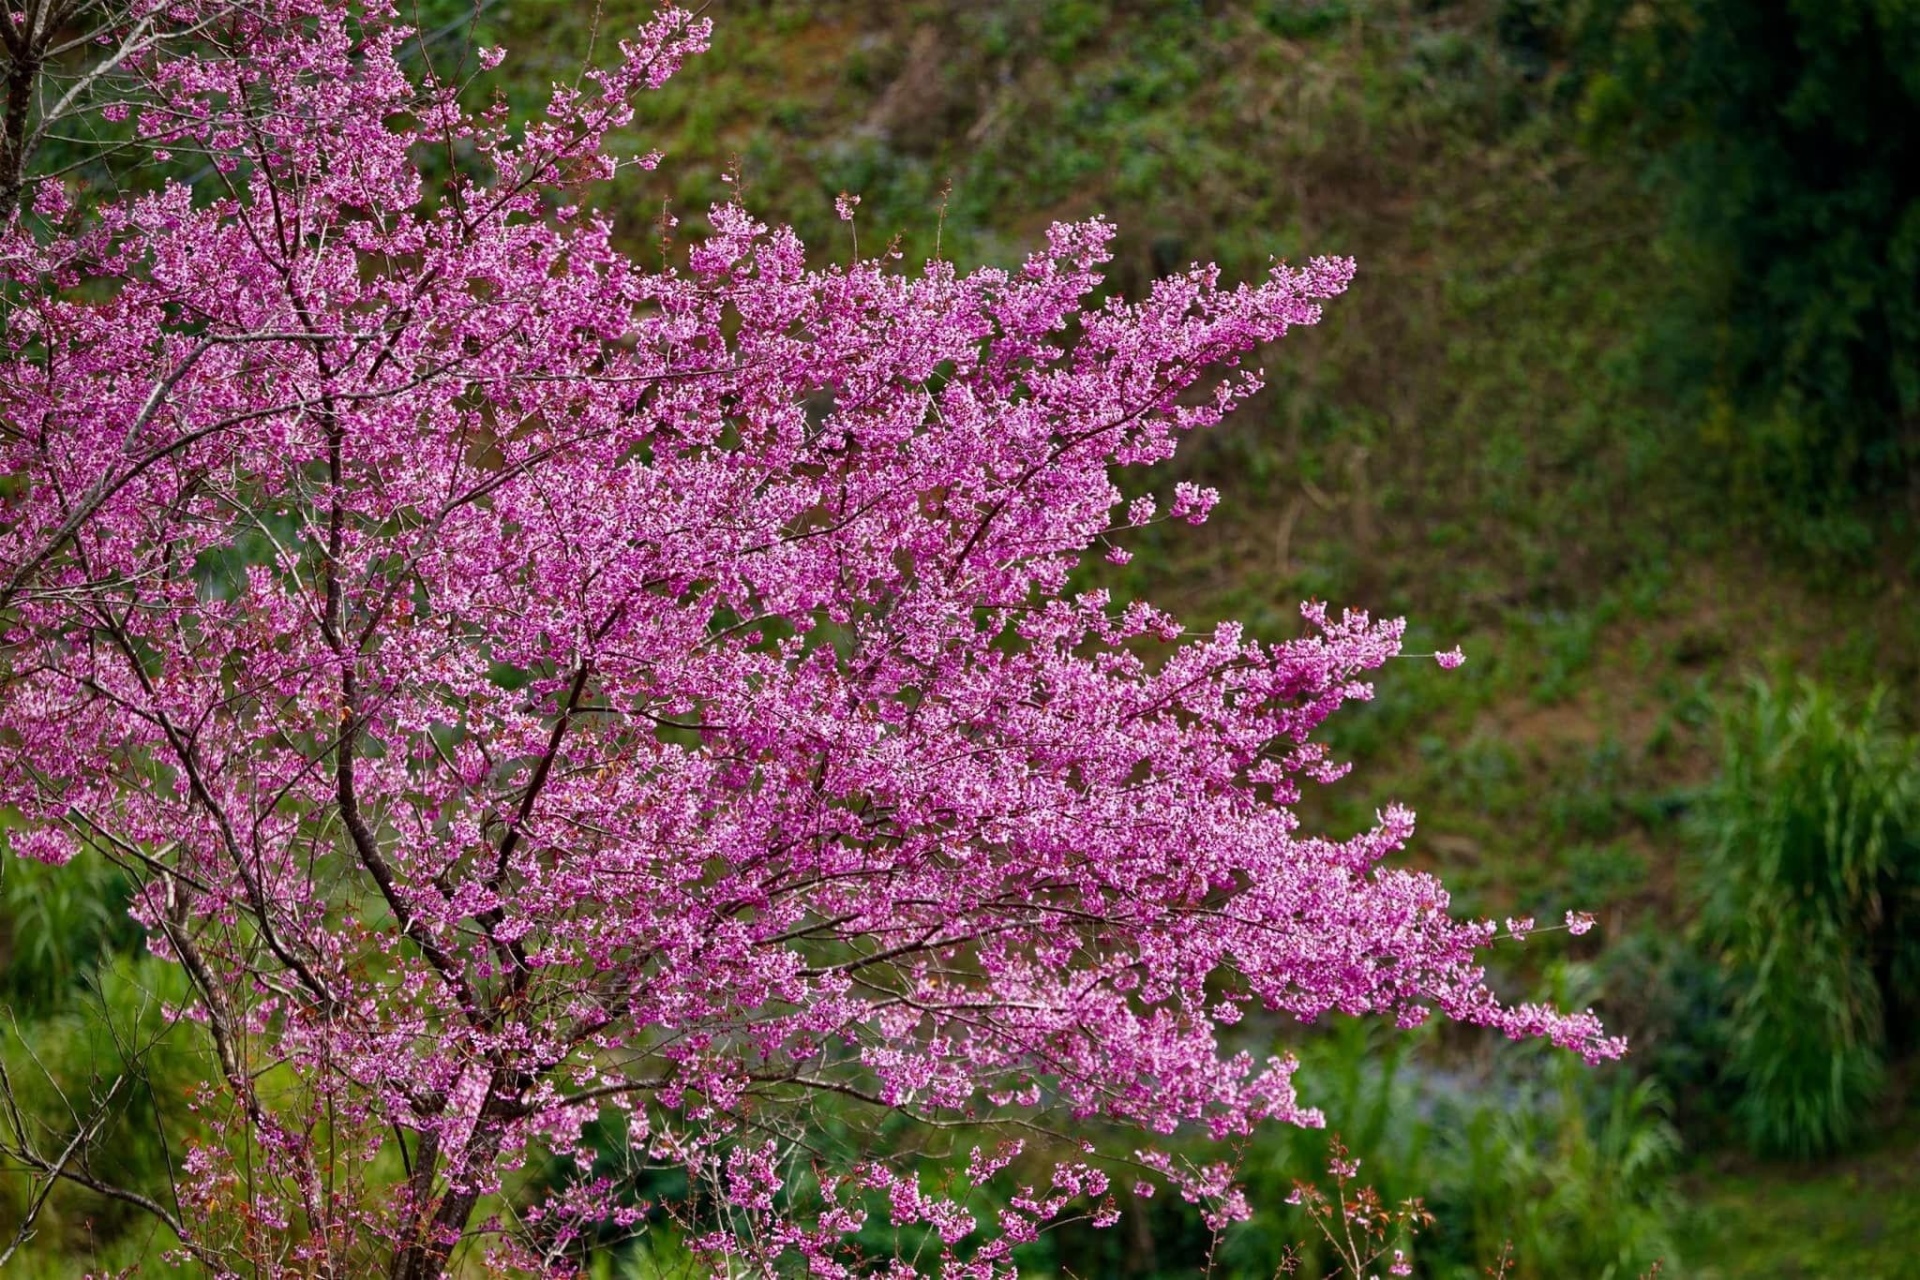 Chiêm ngưỡng sắc hoa tớ dày nhuộm hồng núi rừng Mù Cang Chải - Ảnh 8.